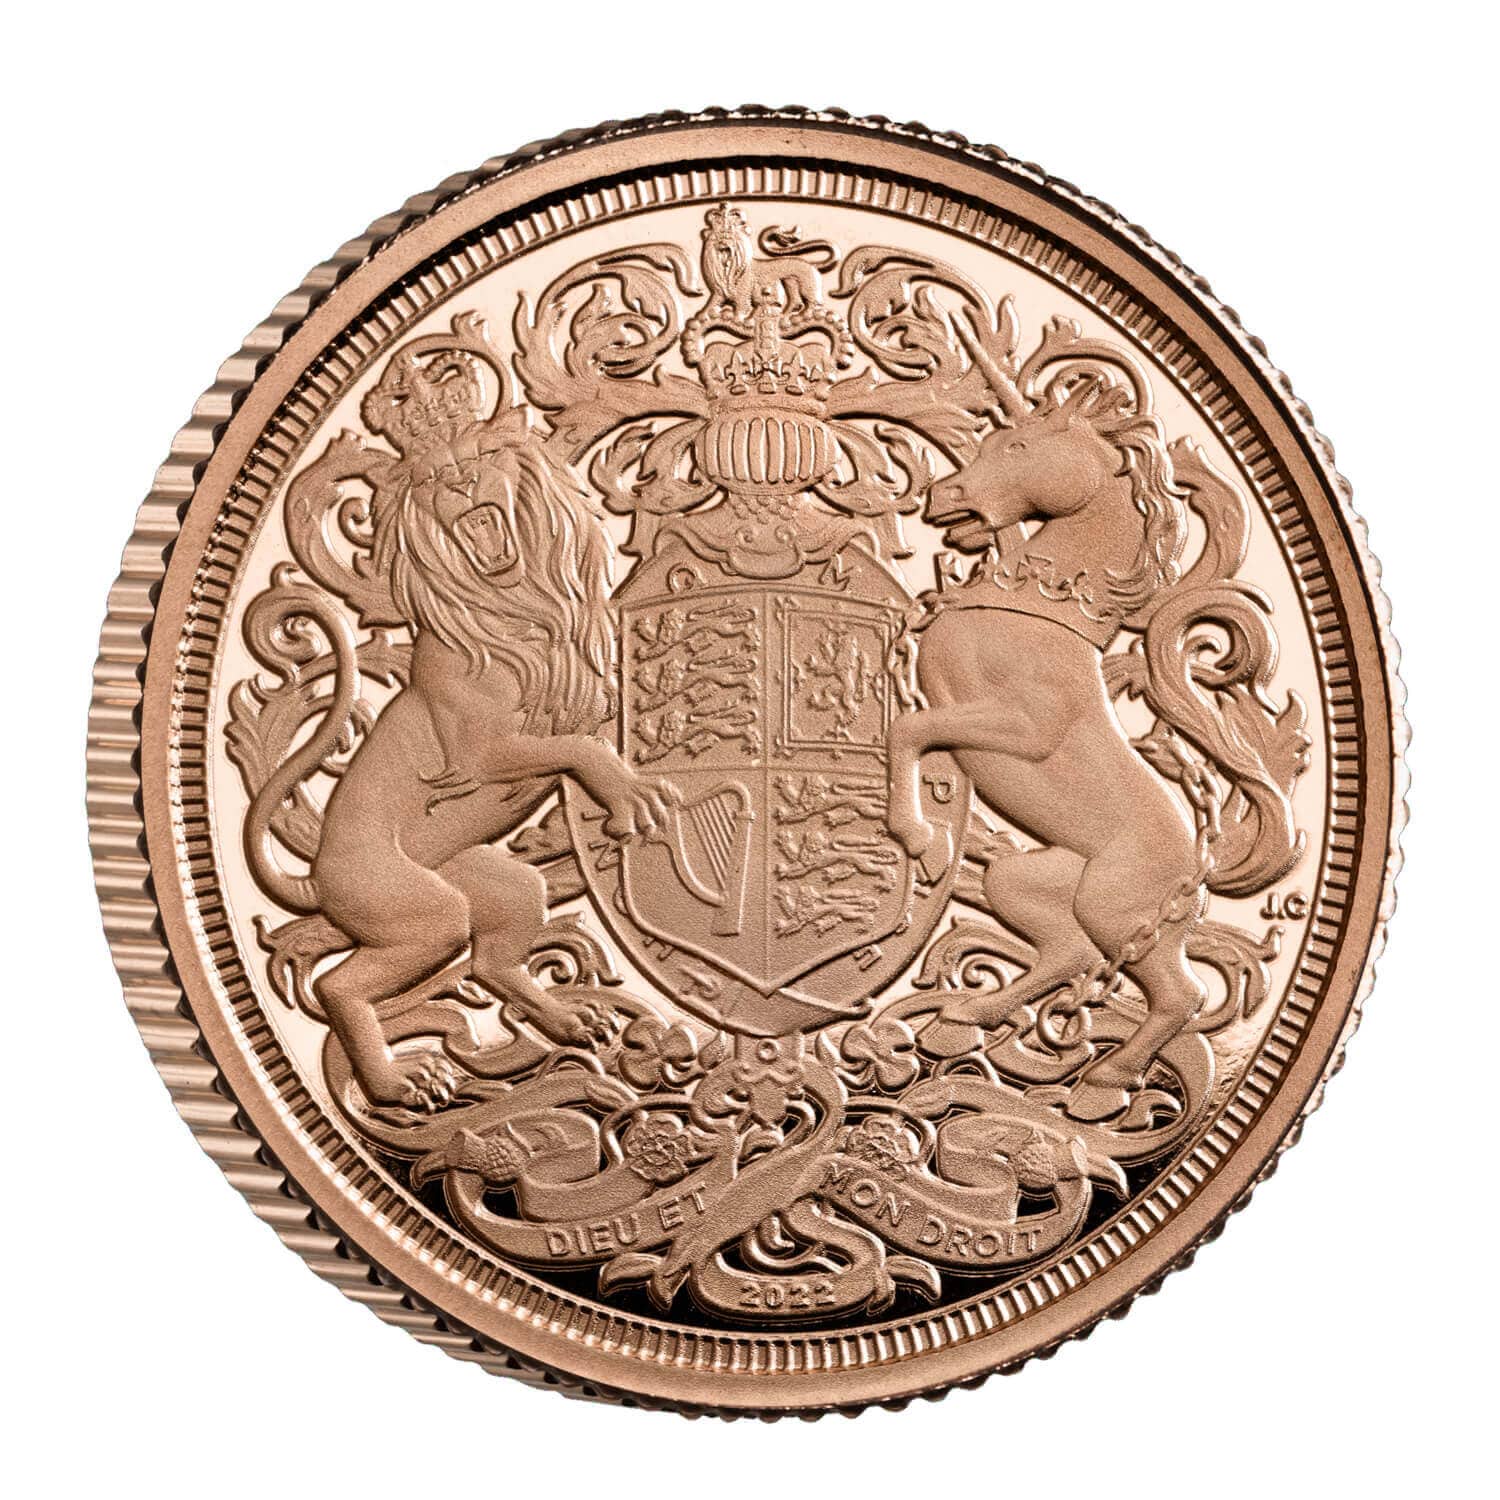 2022年 エリザベス女王追悼 第2弾 ソブリン プルーフ金貨 3枚セット